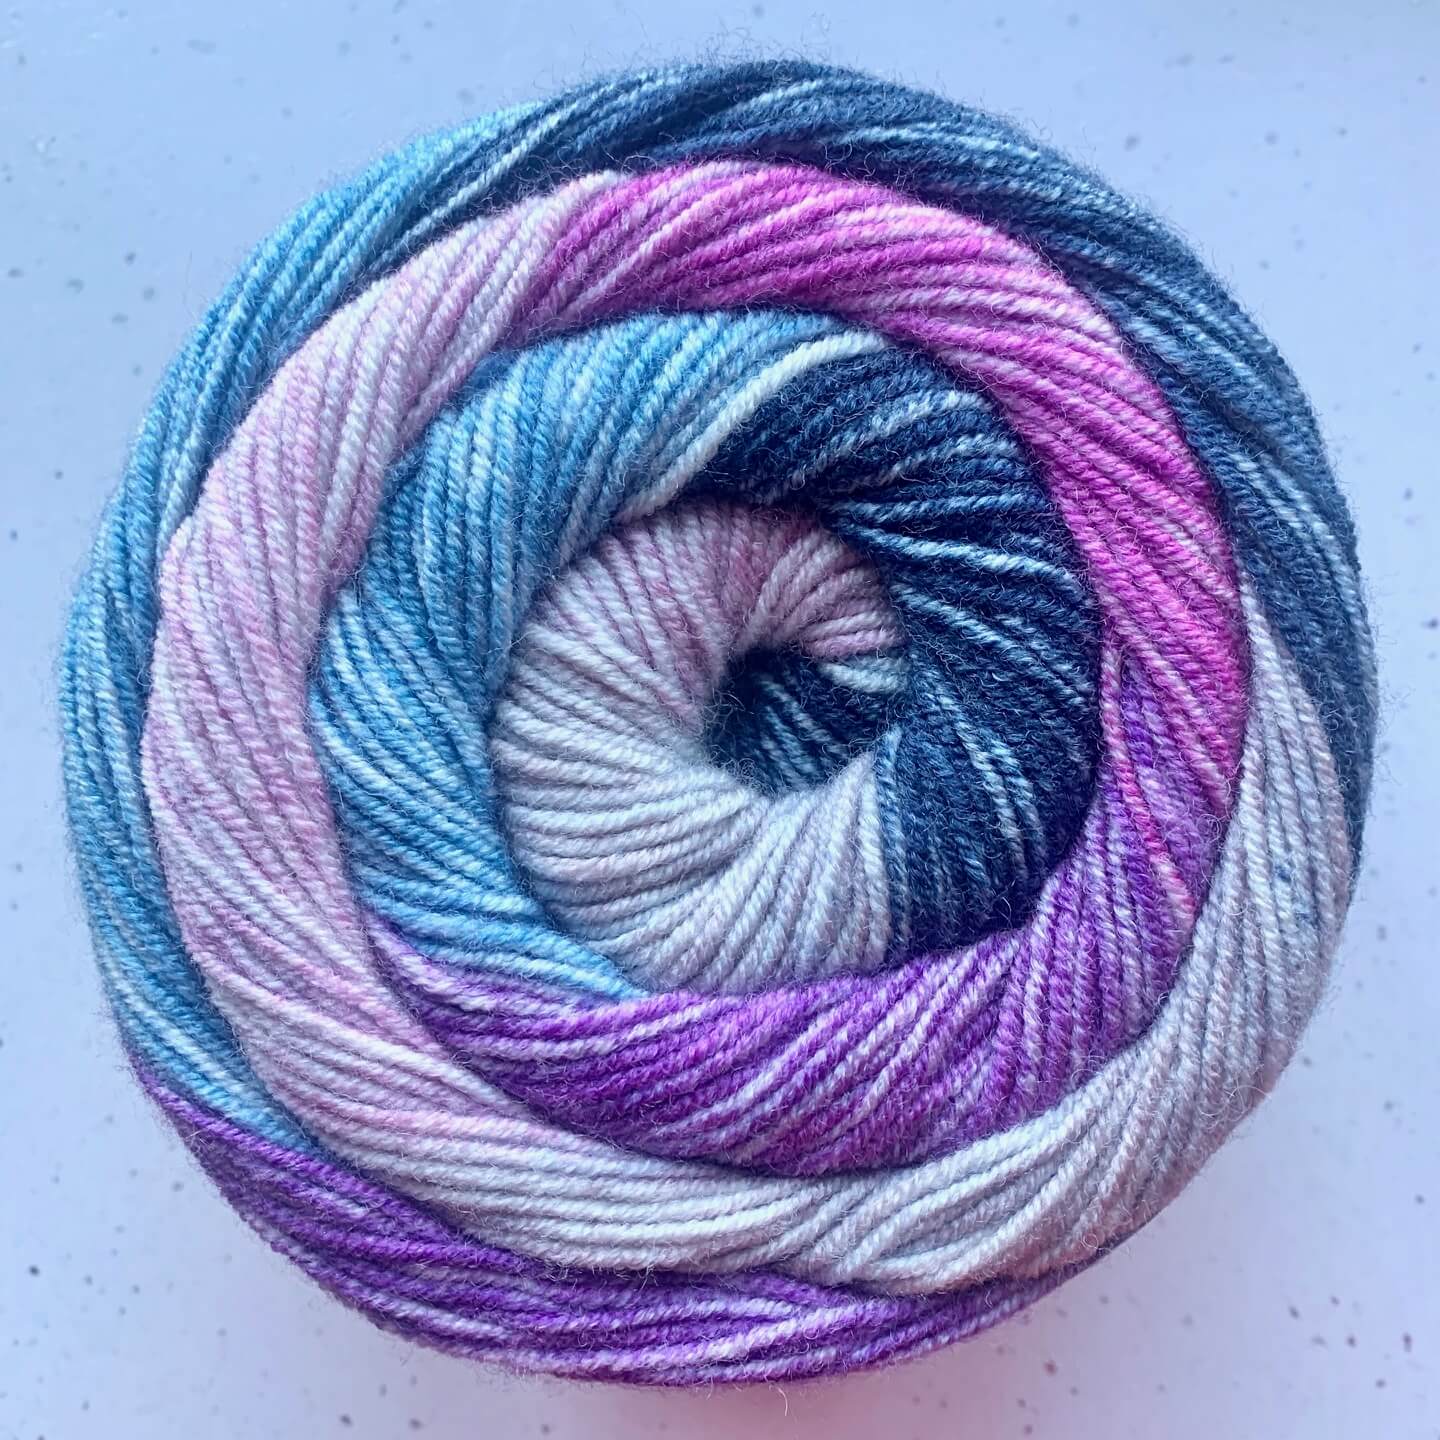 Crochet Lace Cowl Yarn